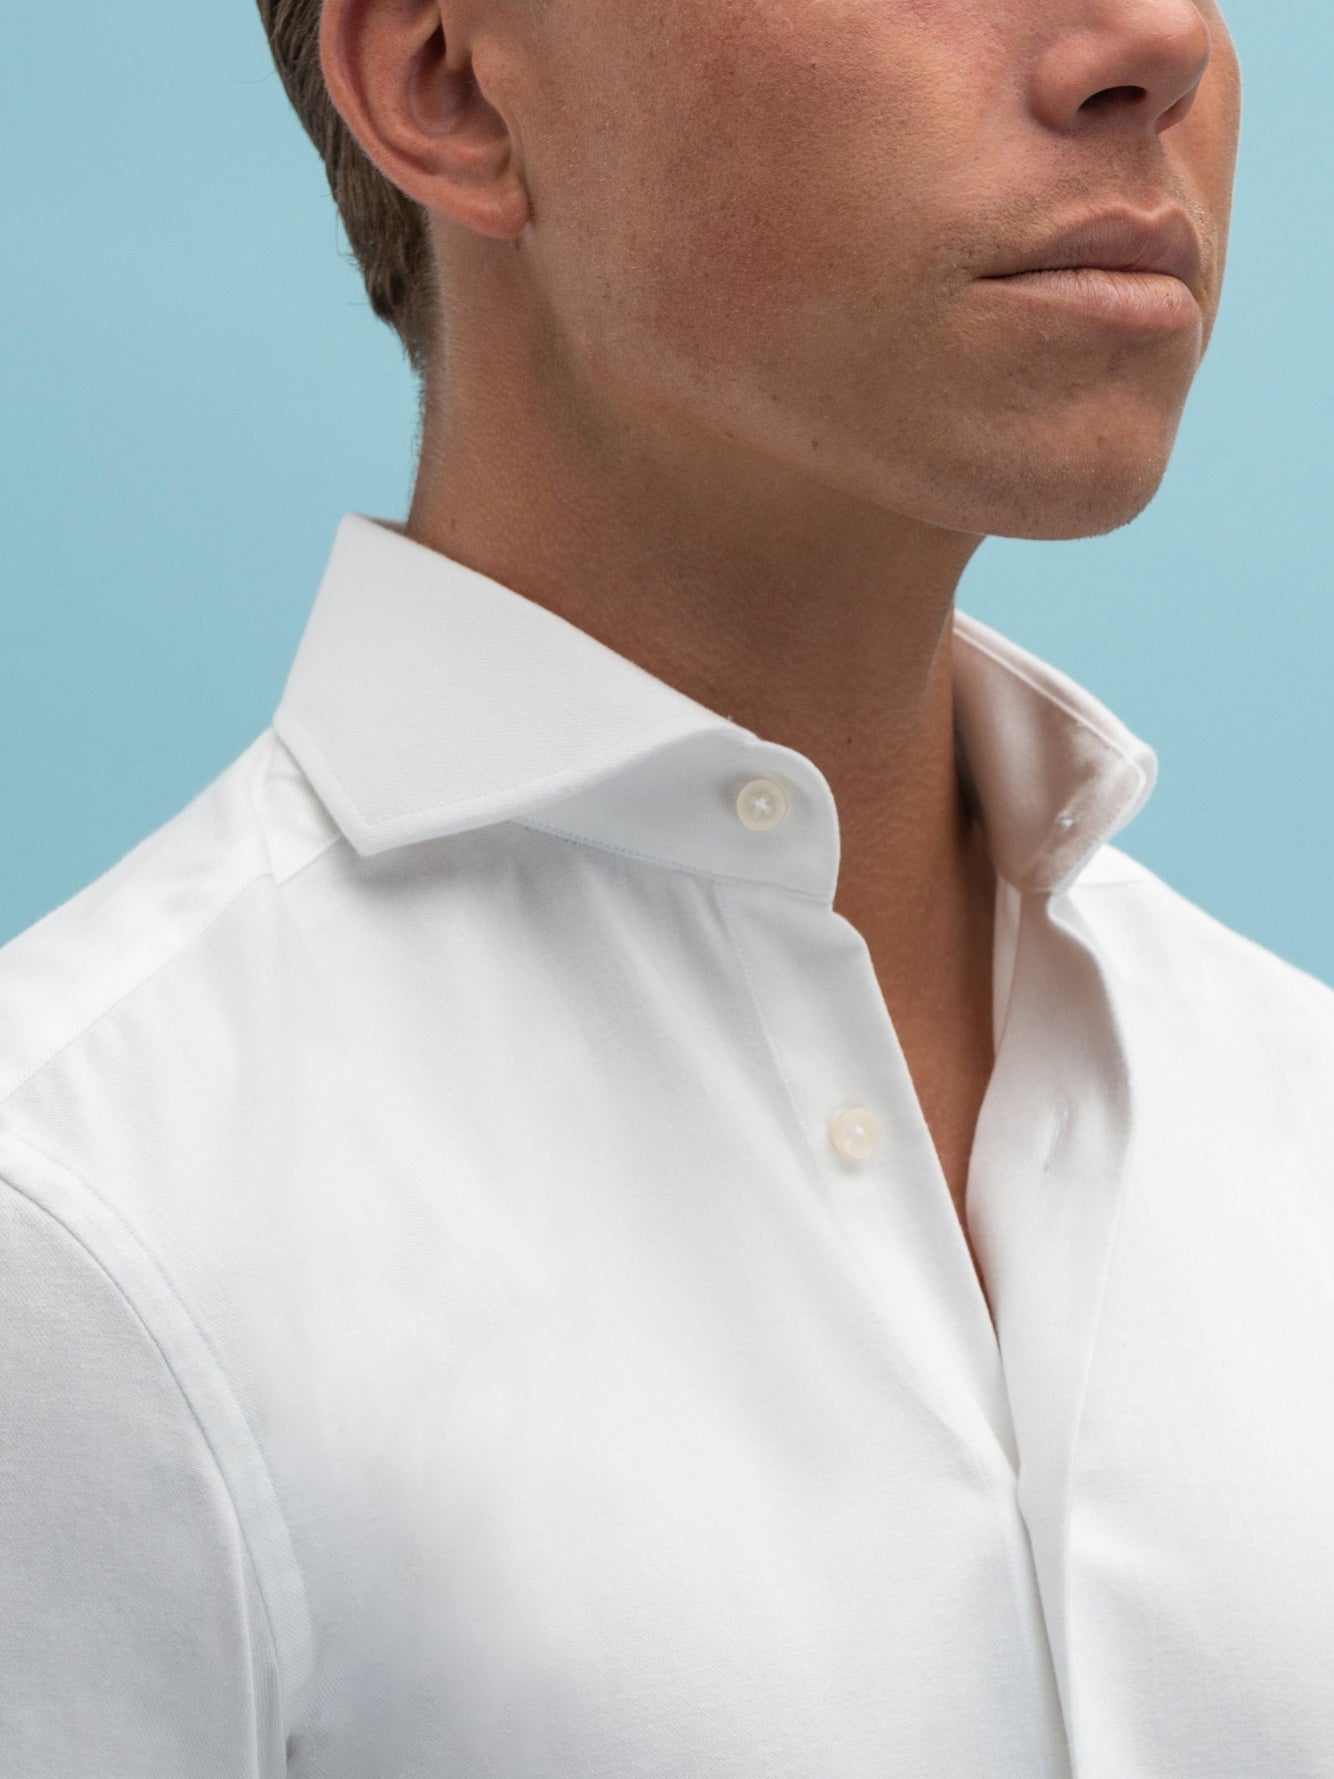 Flannel White Shirt - Grand Le Mar